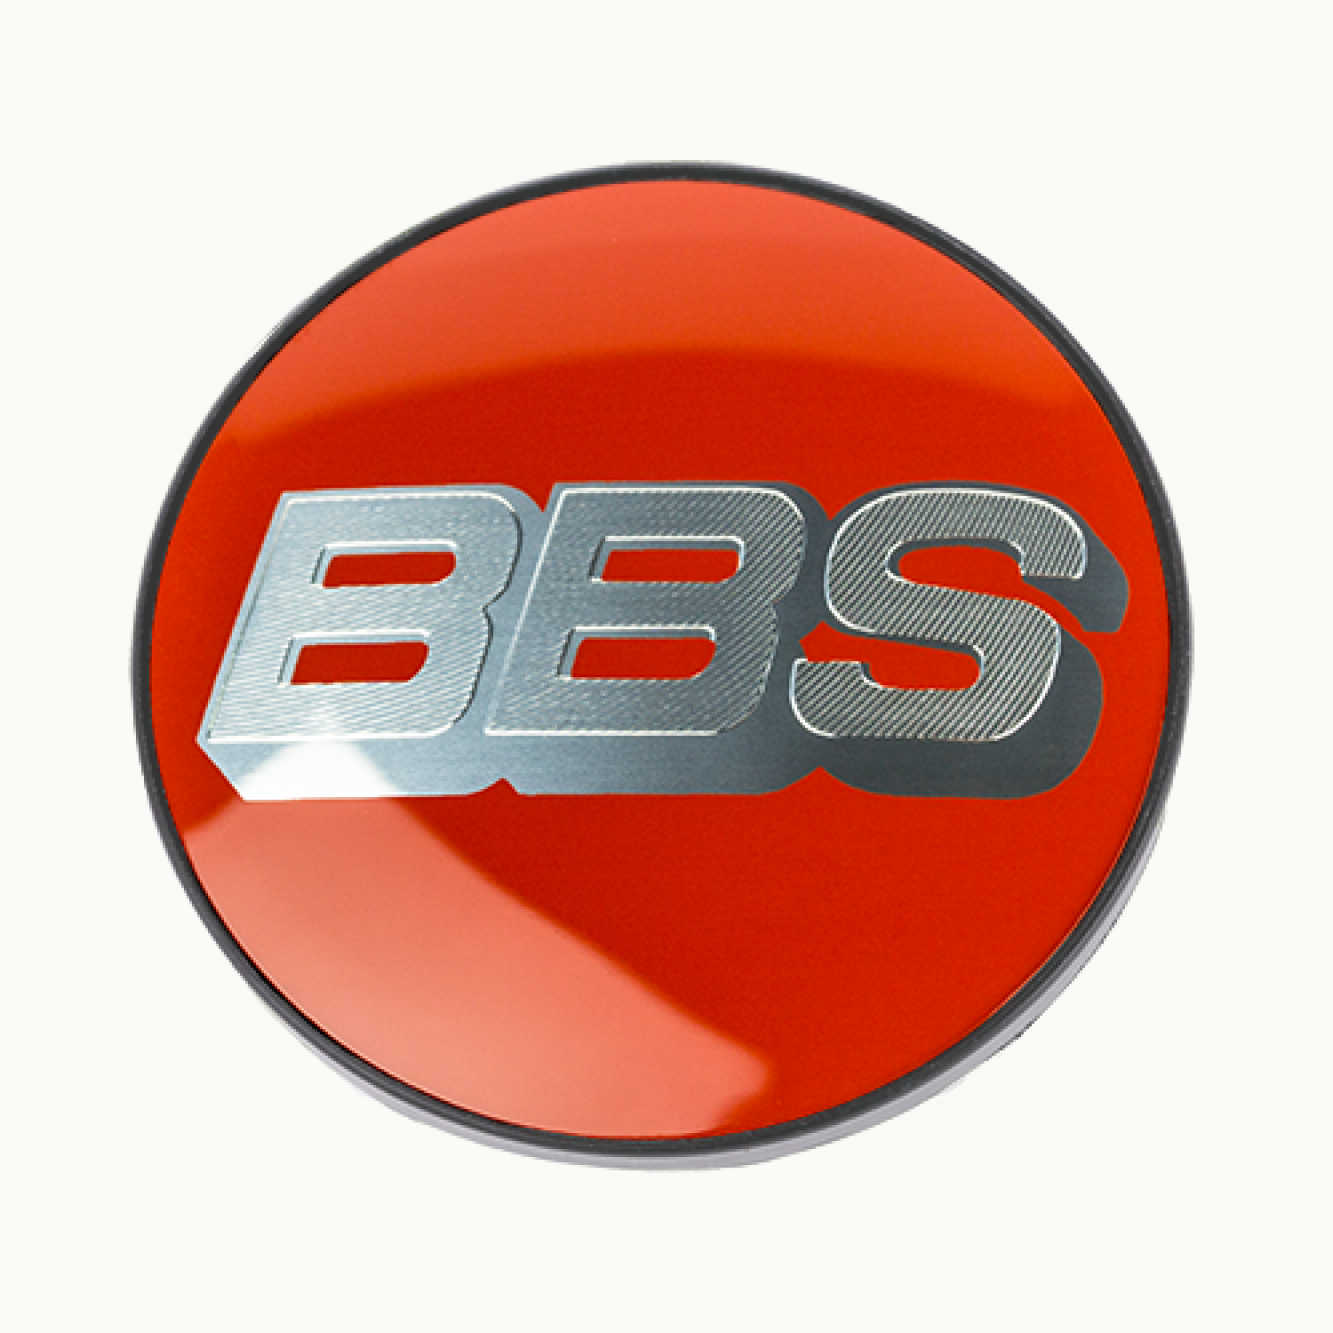 BBS Wheels Symbolscheiben 76 mm für Zentralverschlußkit für BBS (CH-HR/II) Felgen